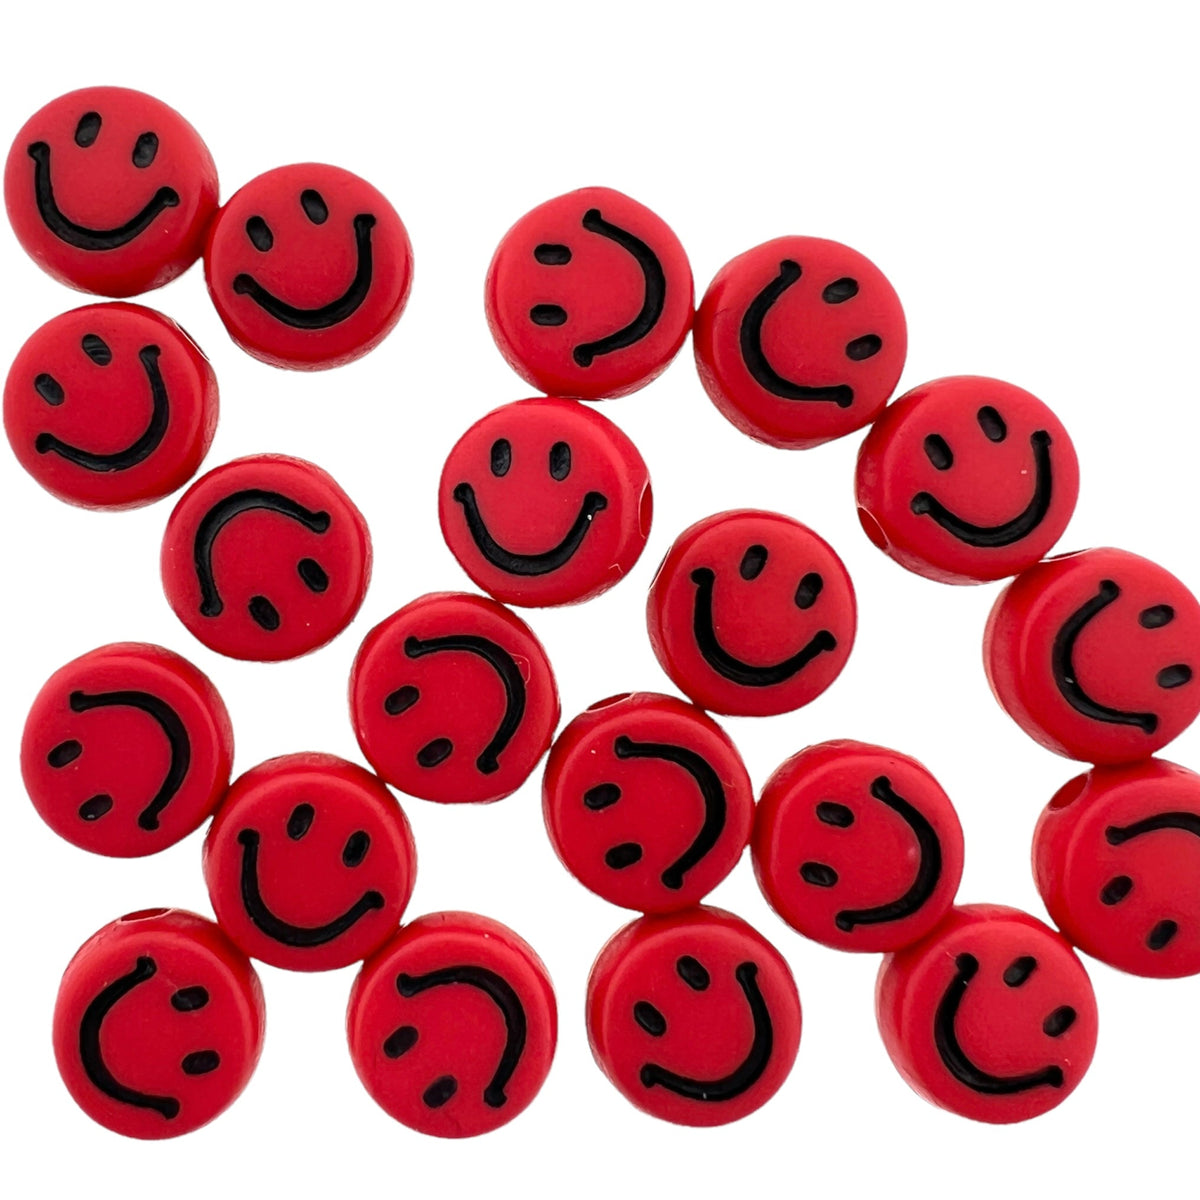 Acryl kralen smiley rood-zwart 7mm - 20 stuks-Kralen-Kraaltjes van Renate